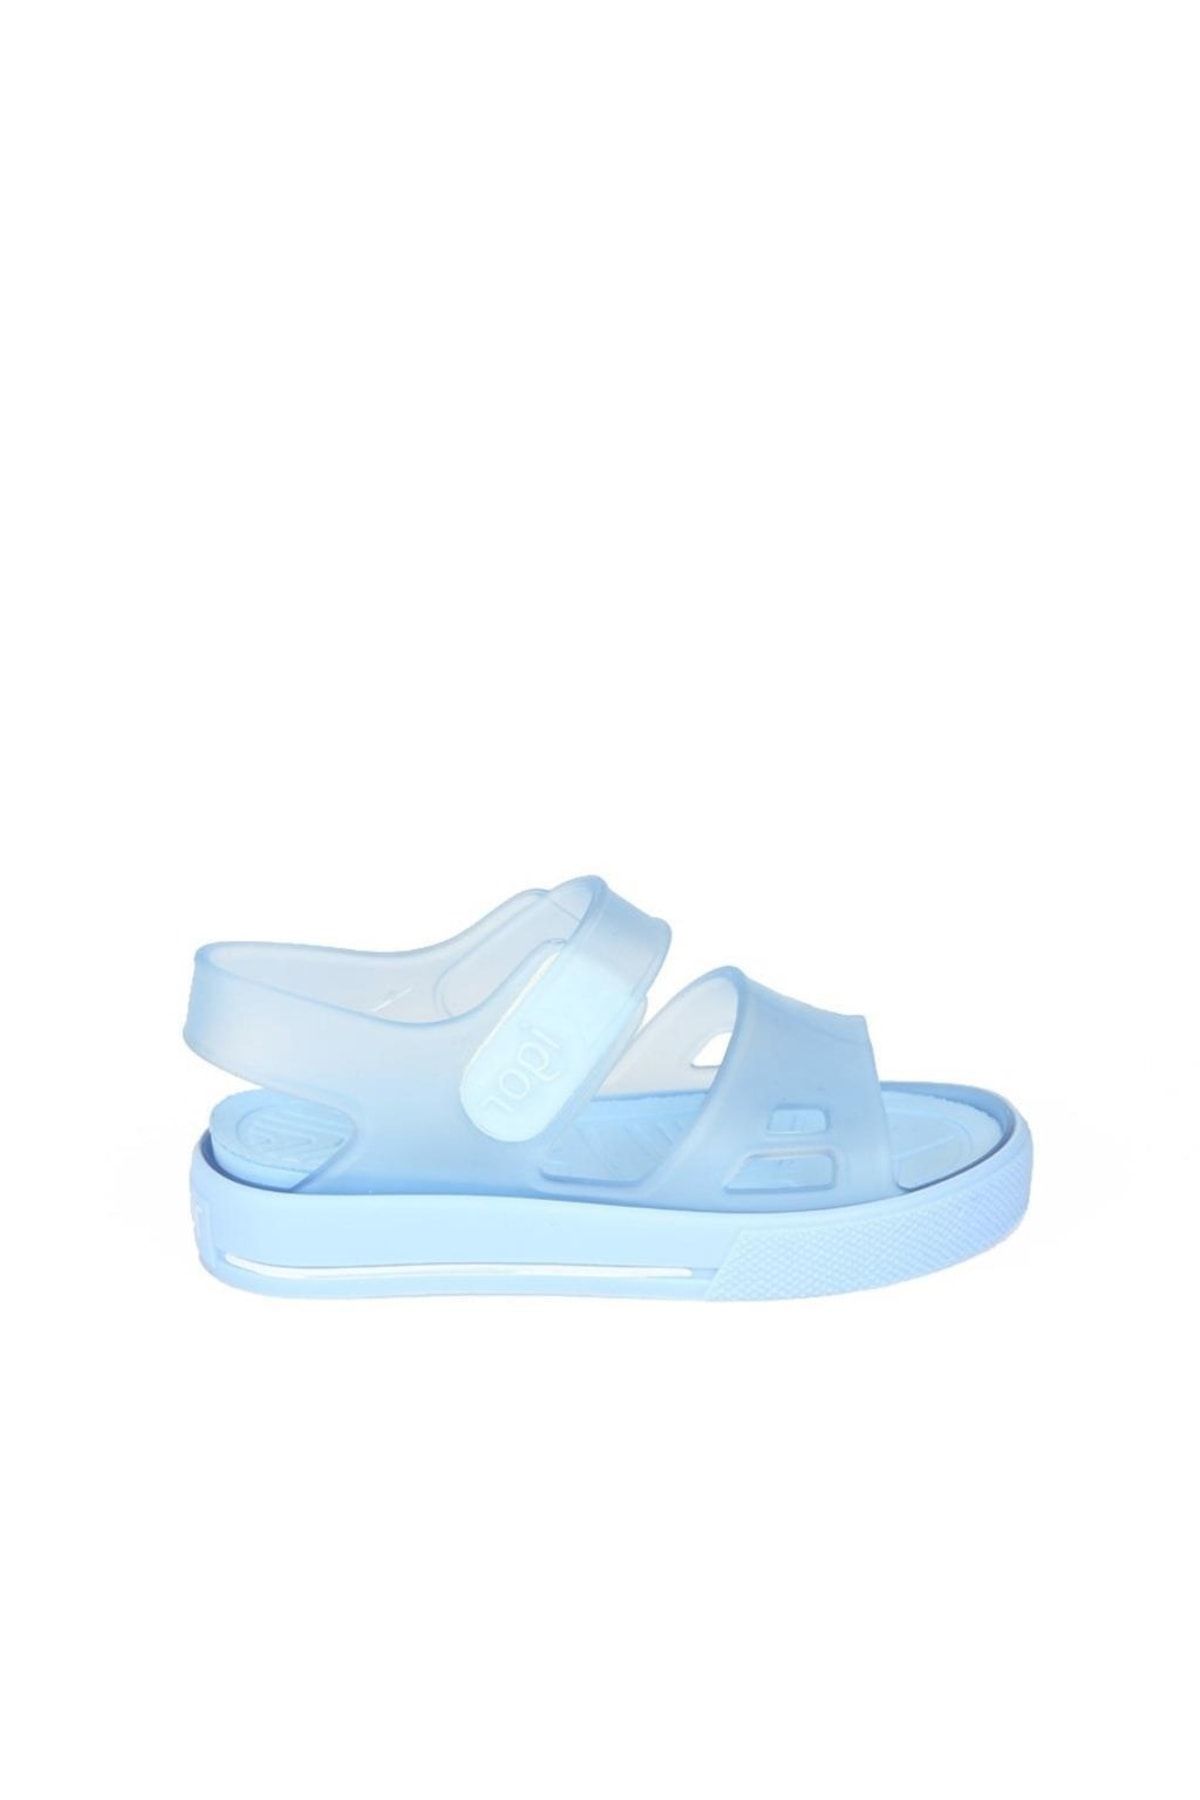 IGOR S10247-006 Malıbu Mavi Çocuk Sandalet